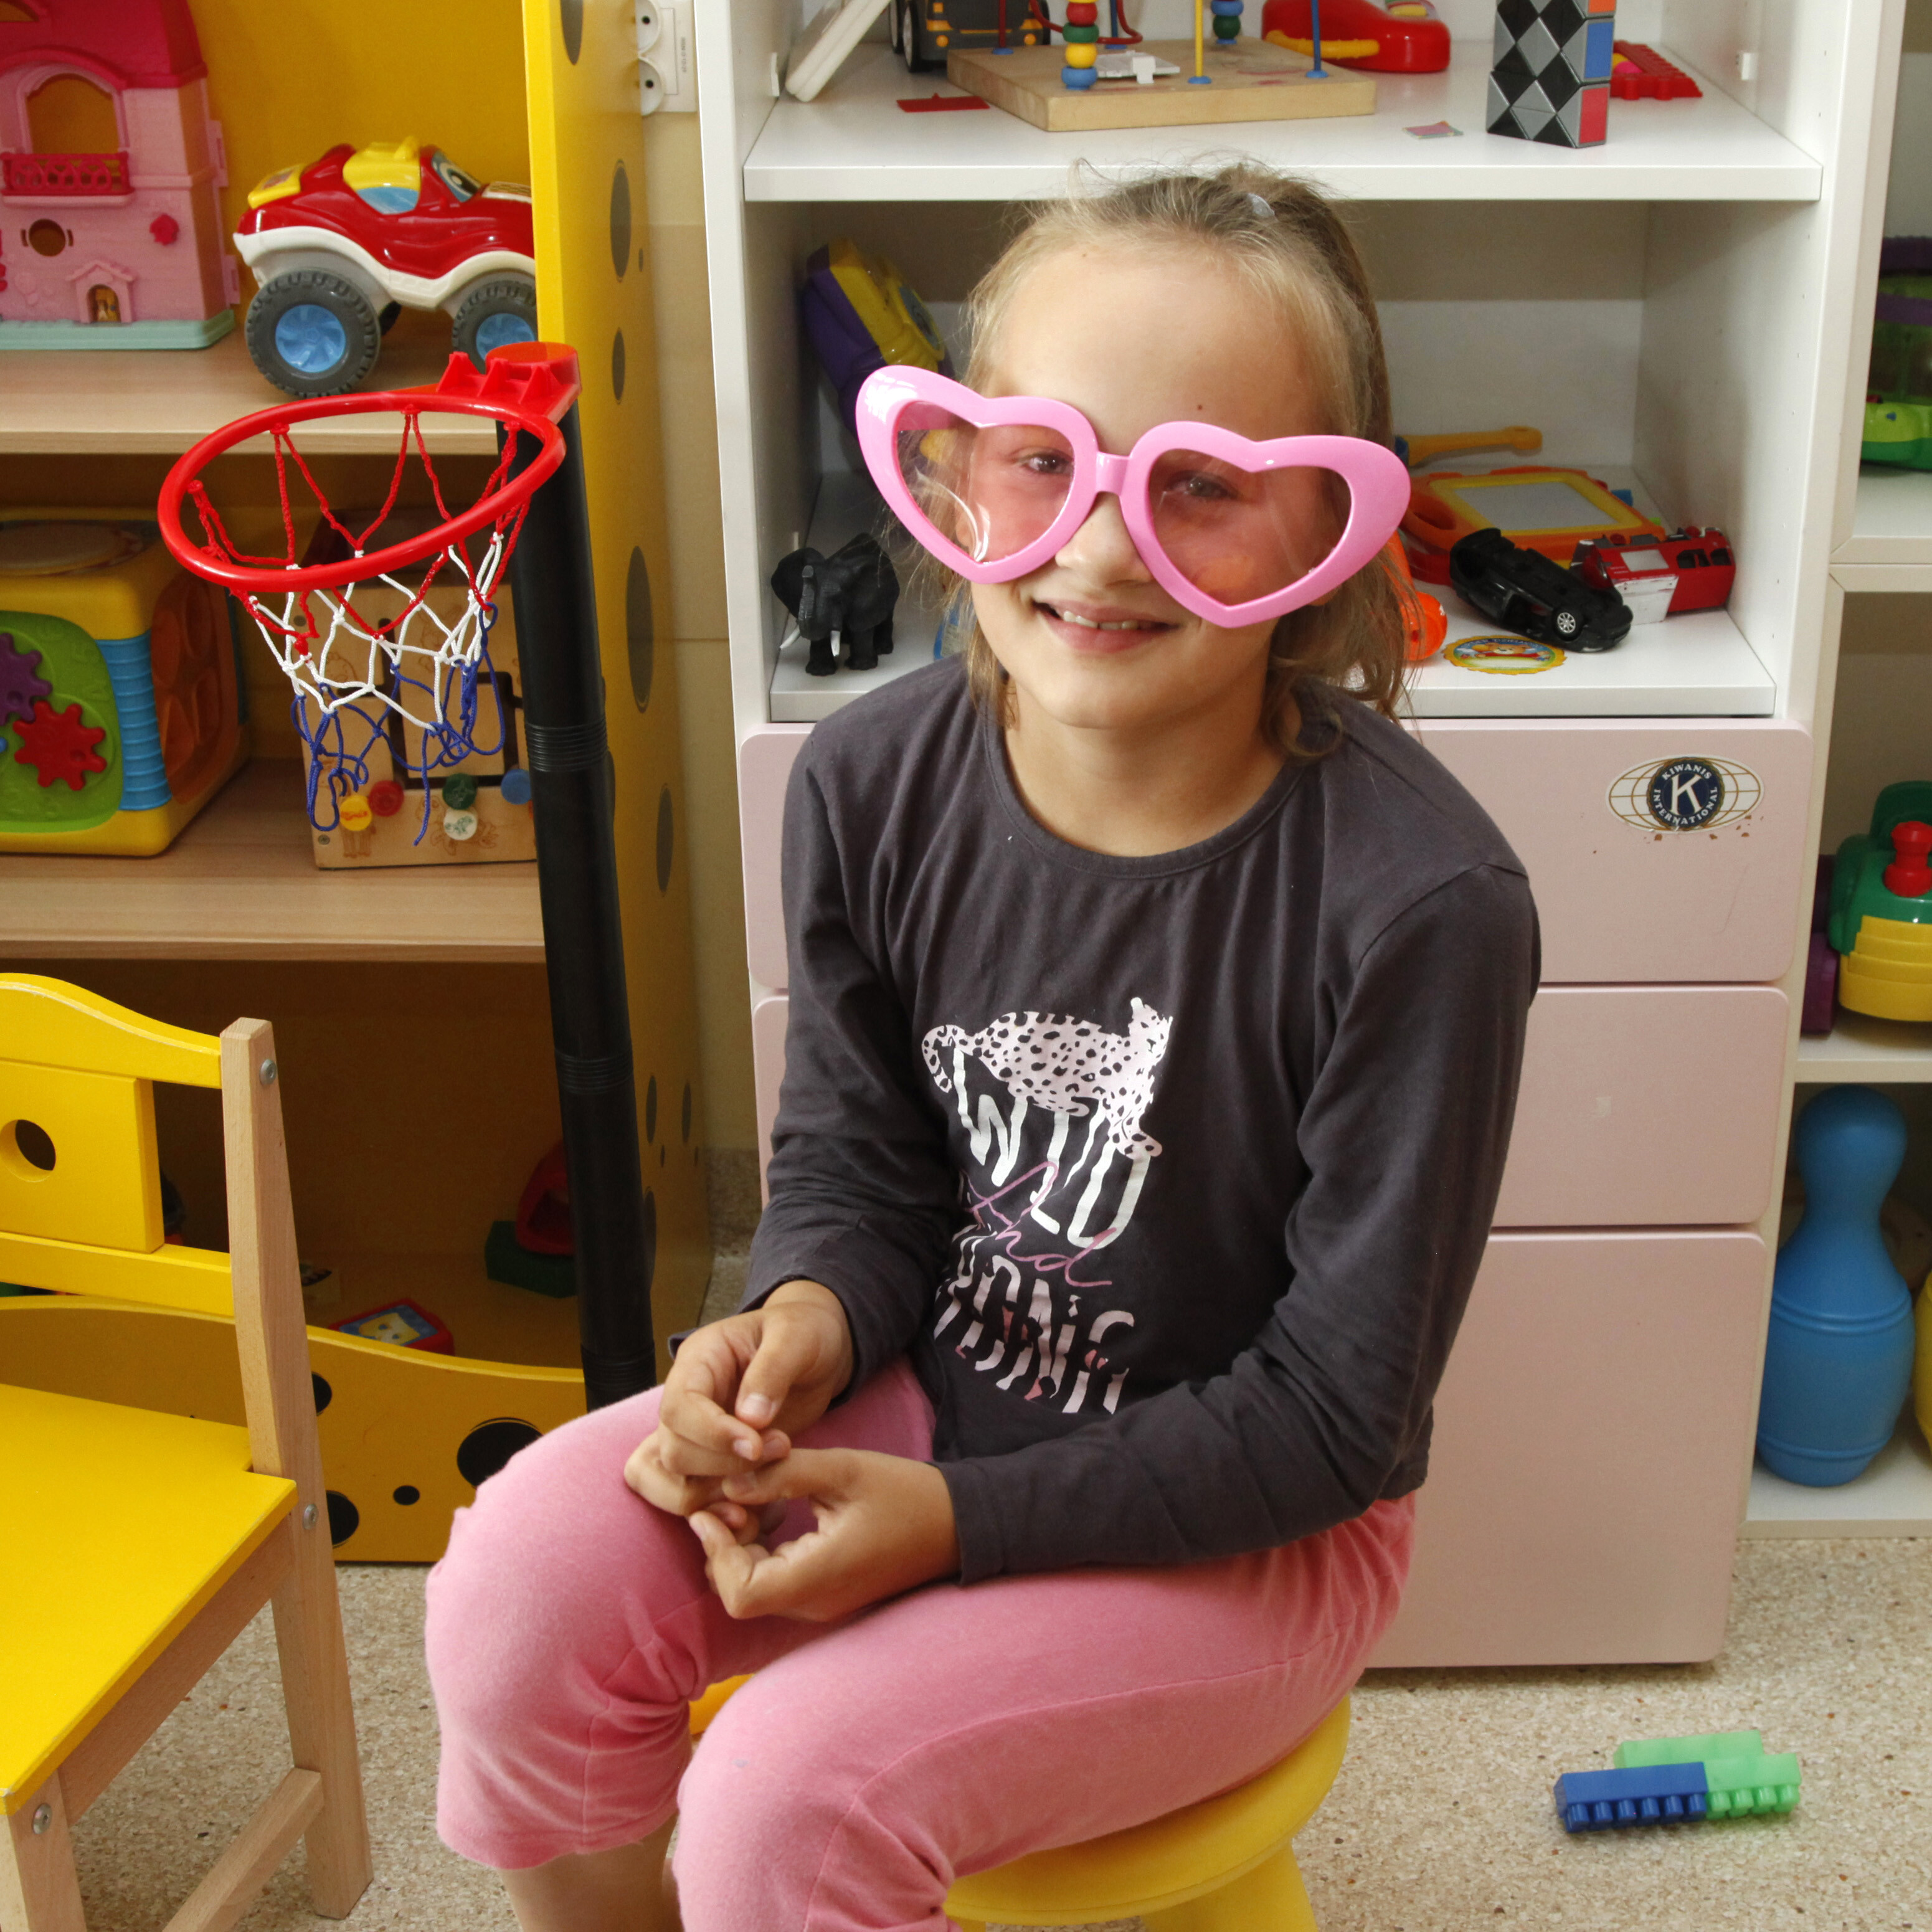 dziewczynka w dużych, różowych okularach w kształcie serca